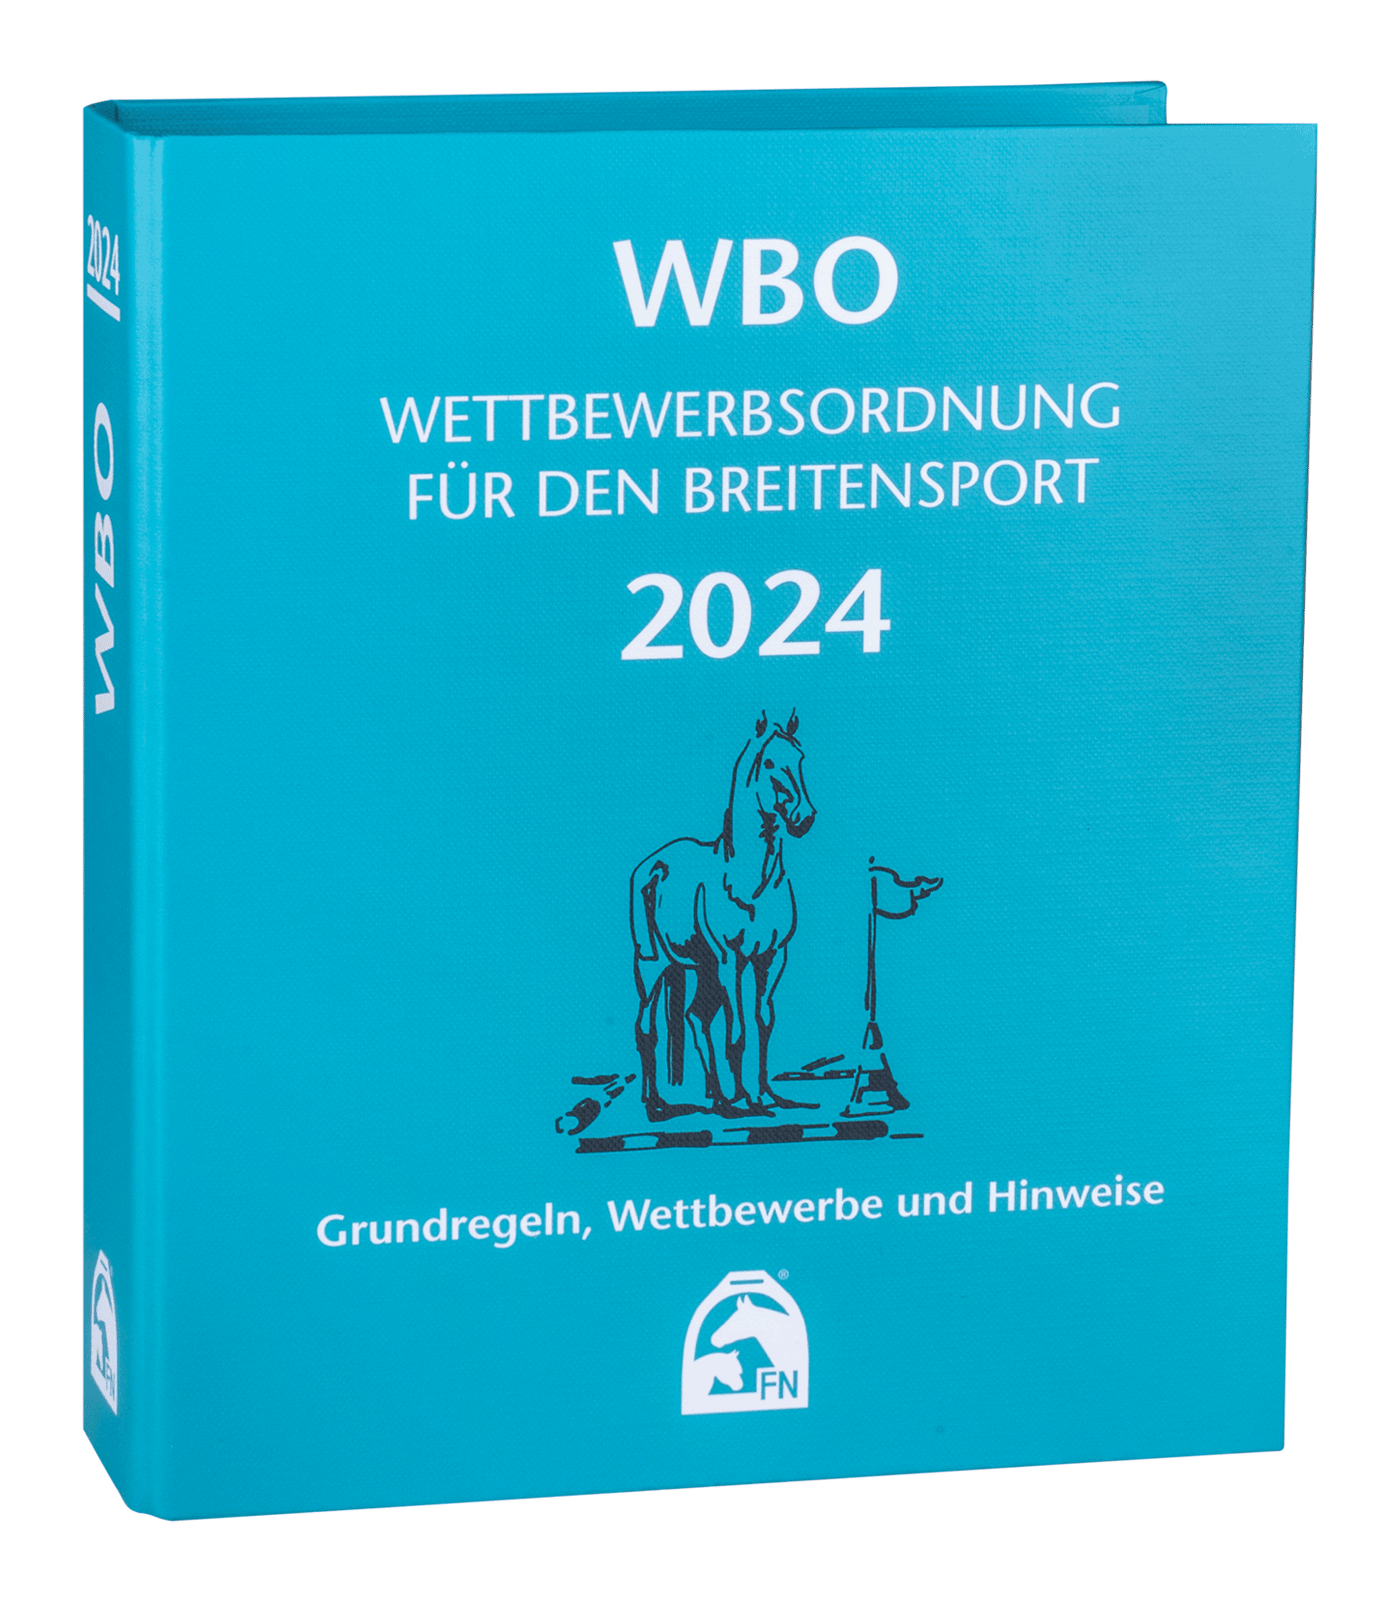 WBO - Wettbewerbsordnung für den Breitensport 2024